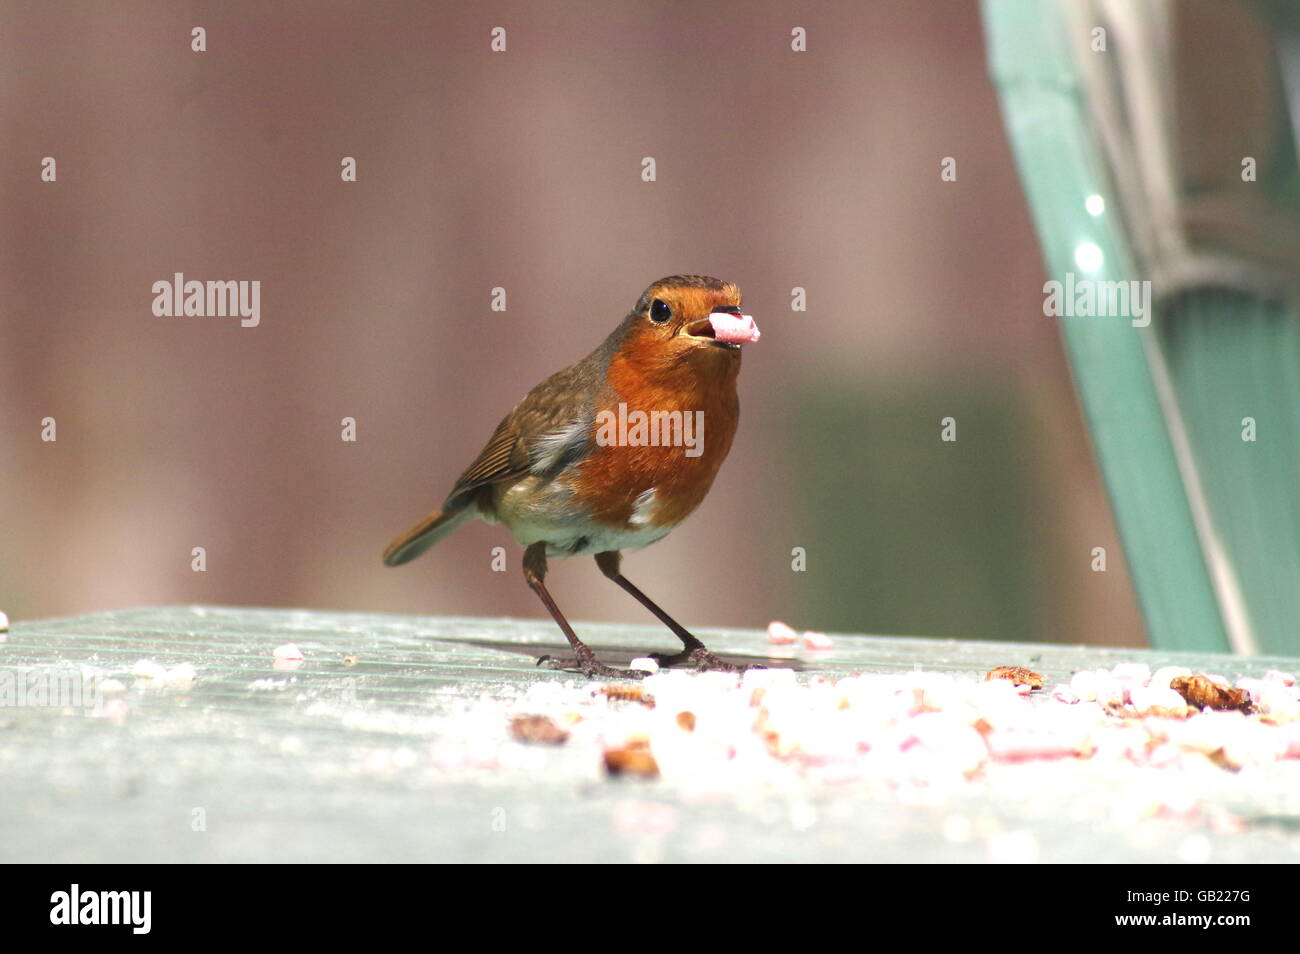 Robin eating pellet on garden table Stock Photo